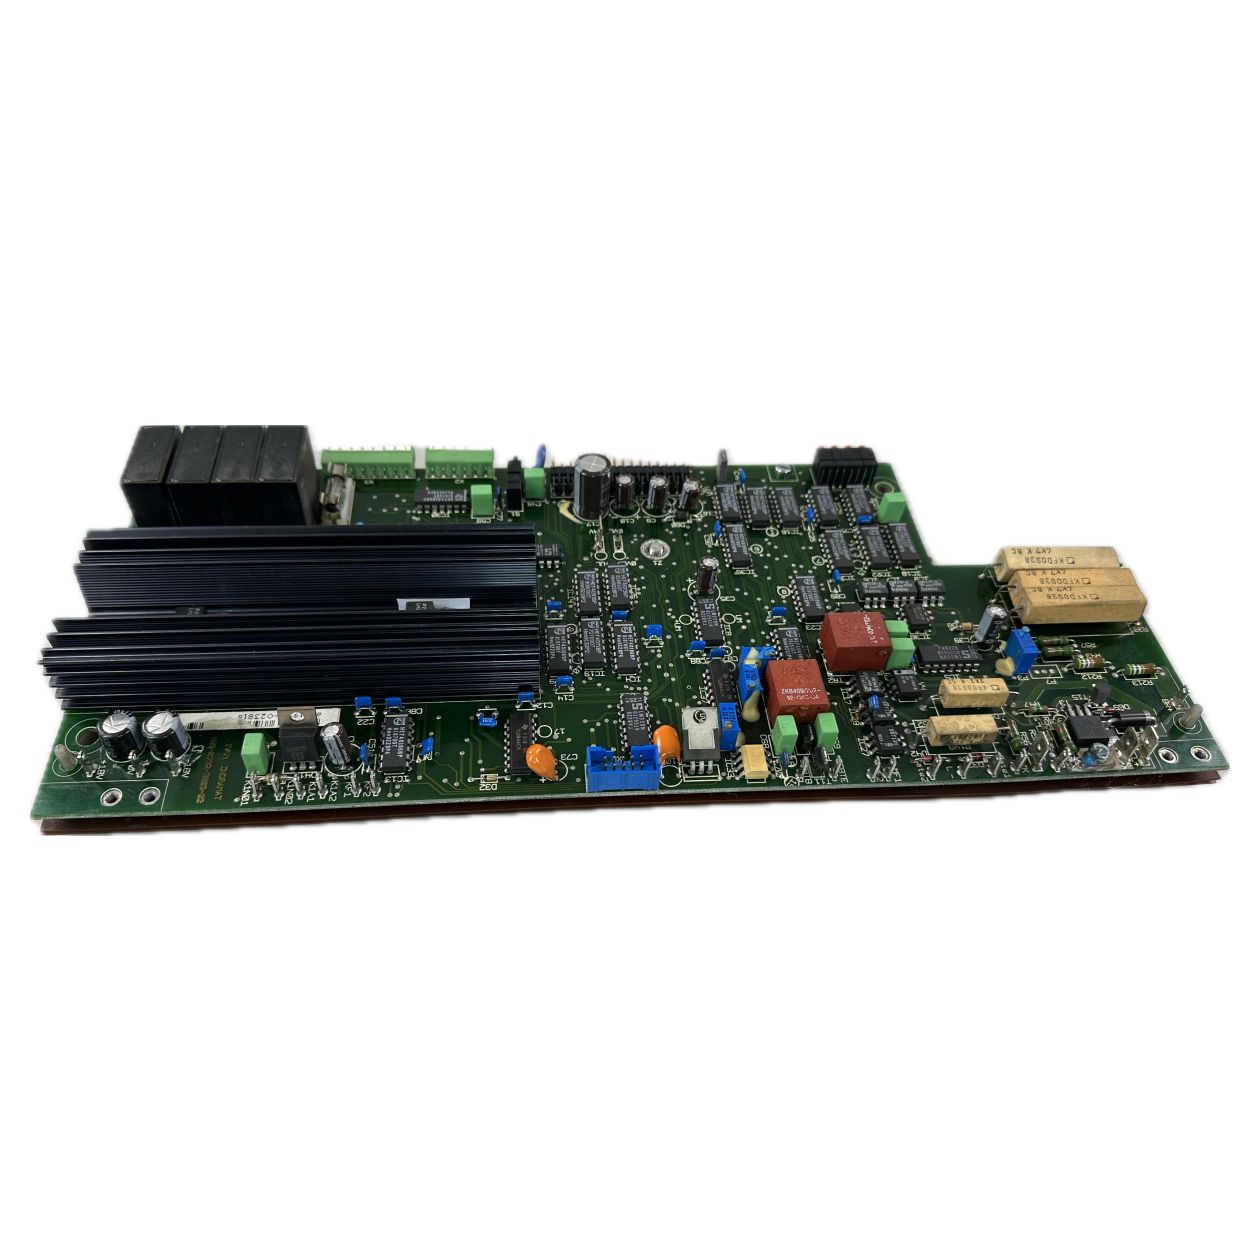 LK2978 Inverter board Frequenzumrichter Platine Indramat TVS4 109-0792-3B03-02_2